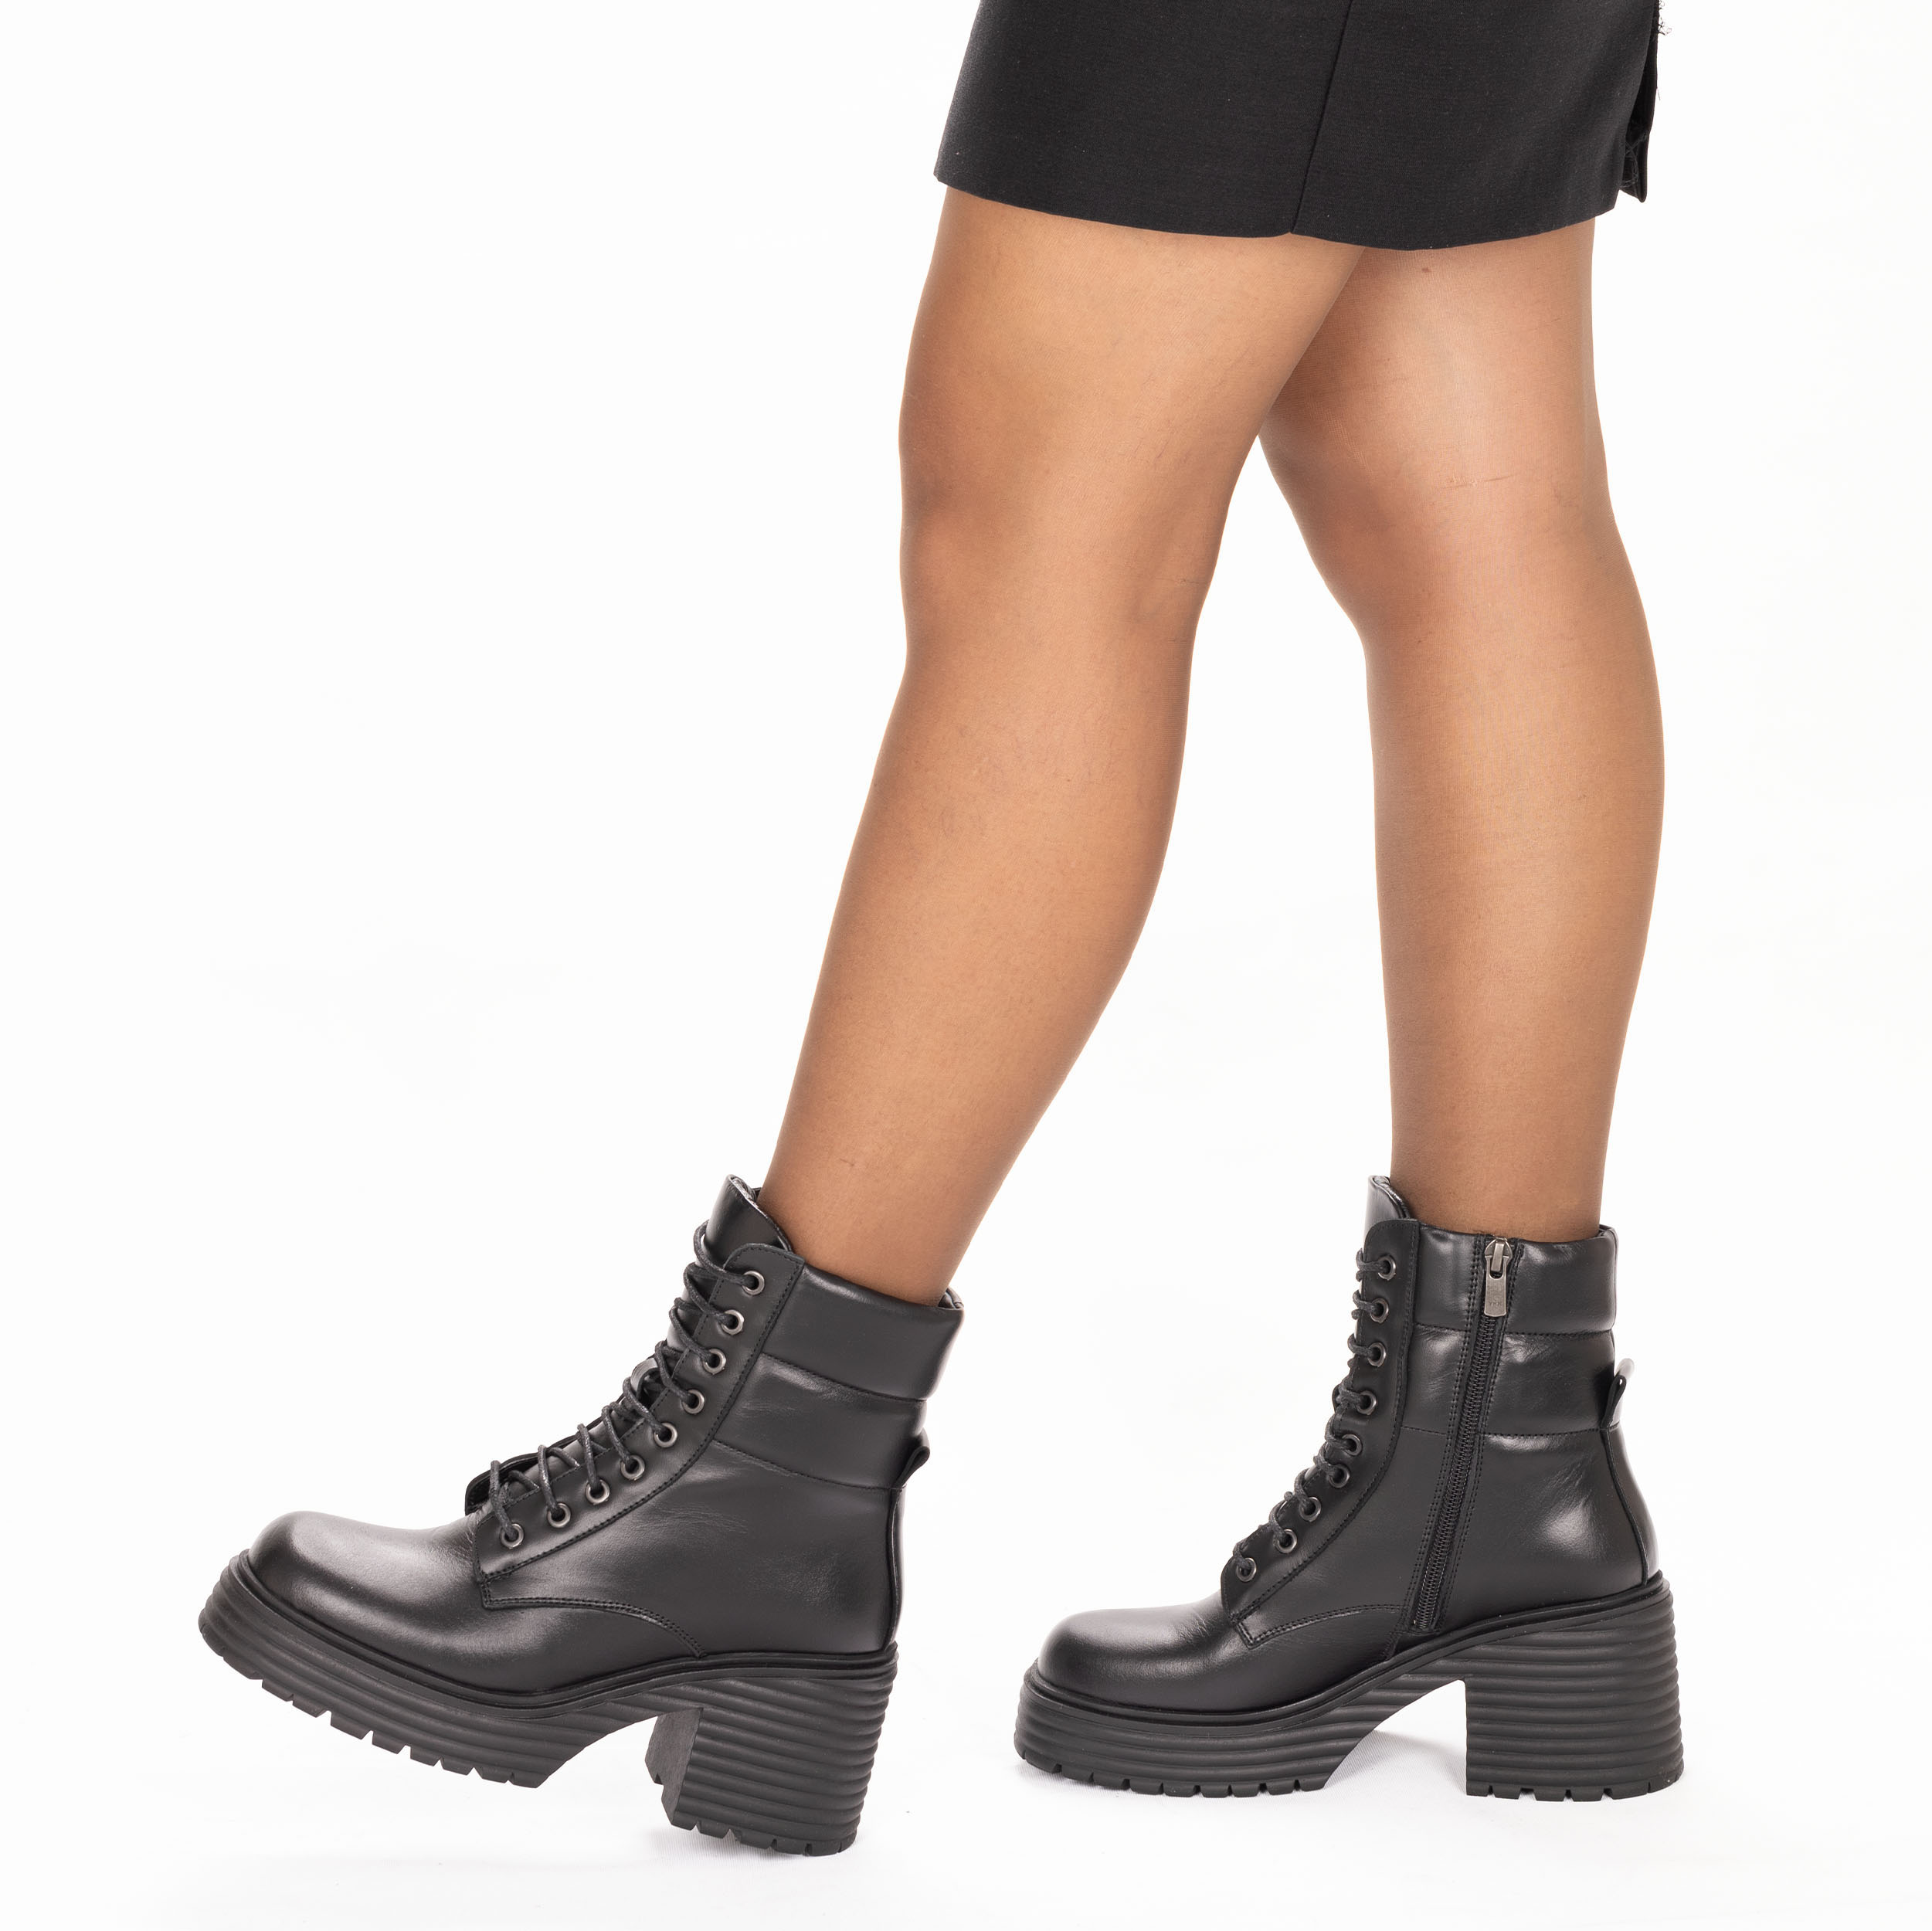 Kadın Hakiki Deri Küt Burun Kalın Taban Topuklu Bot, Renk: Siyah, Beden: 36